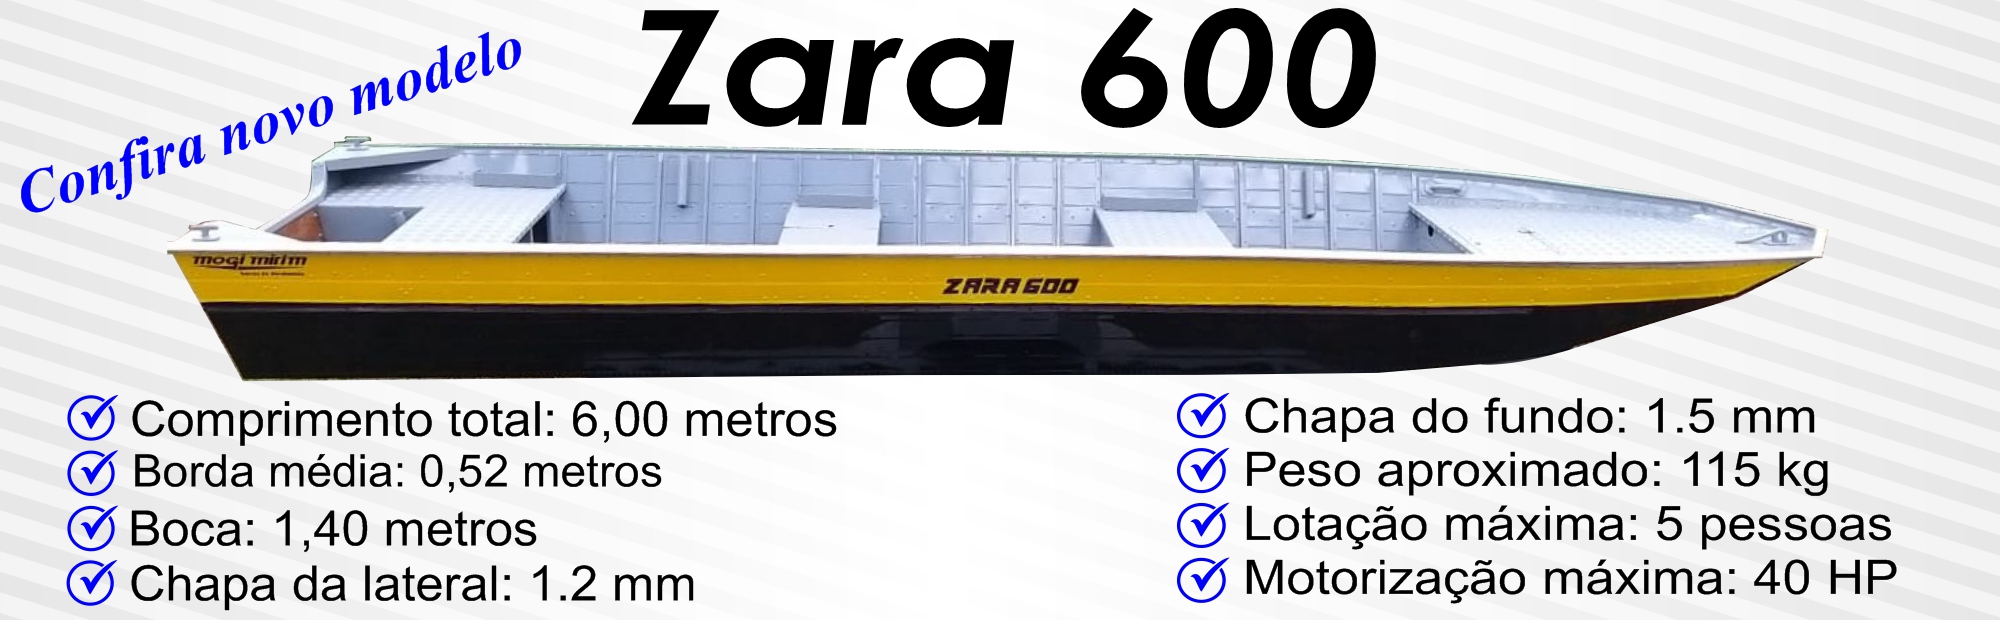 Zara 600